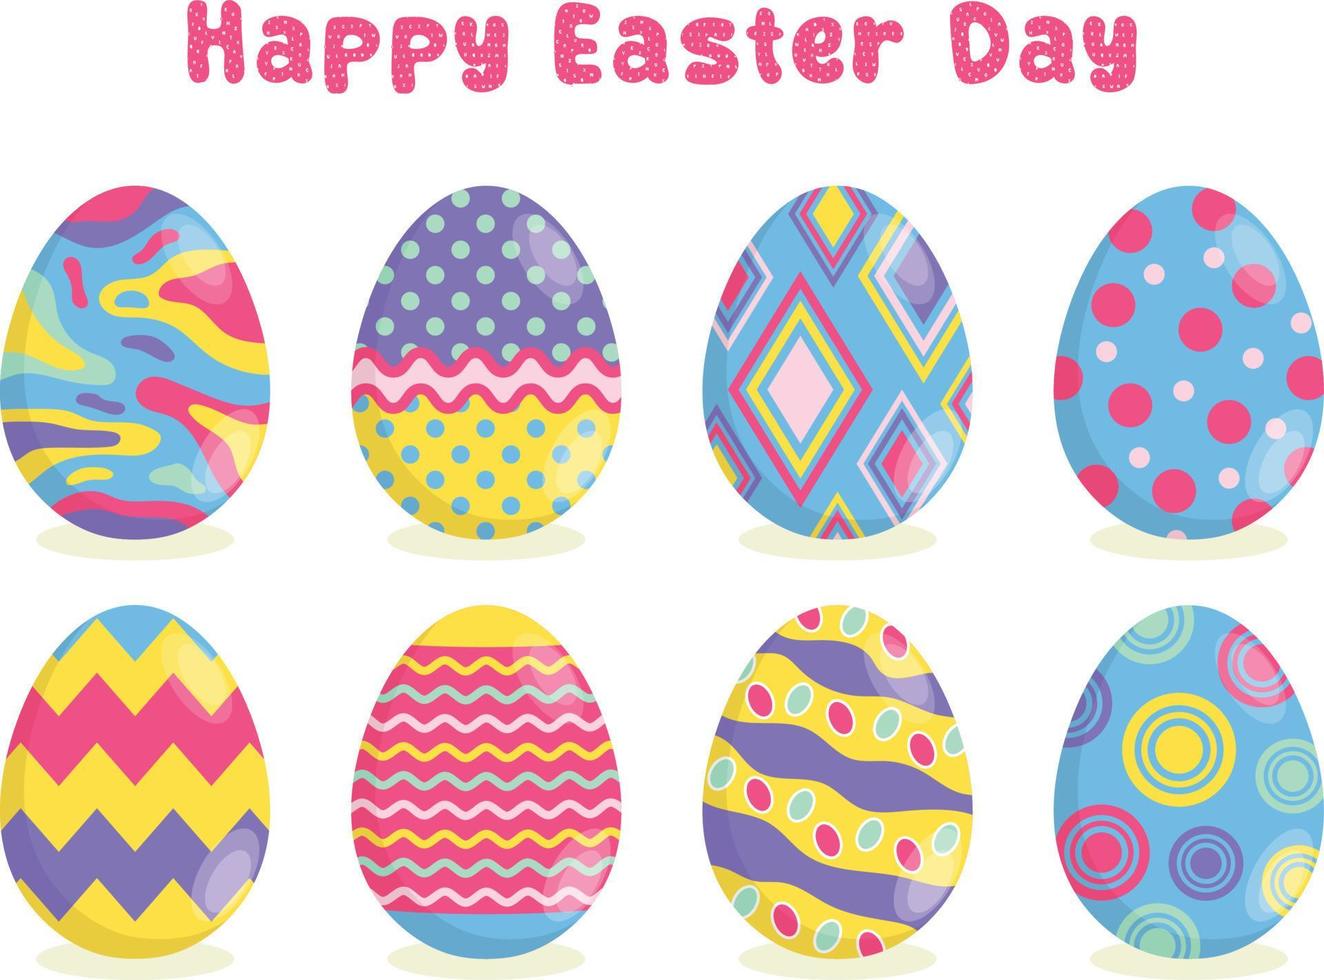 eieren verzameling voor Pasen dag. vector illustratie voor sticker, banier, poster, enz